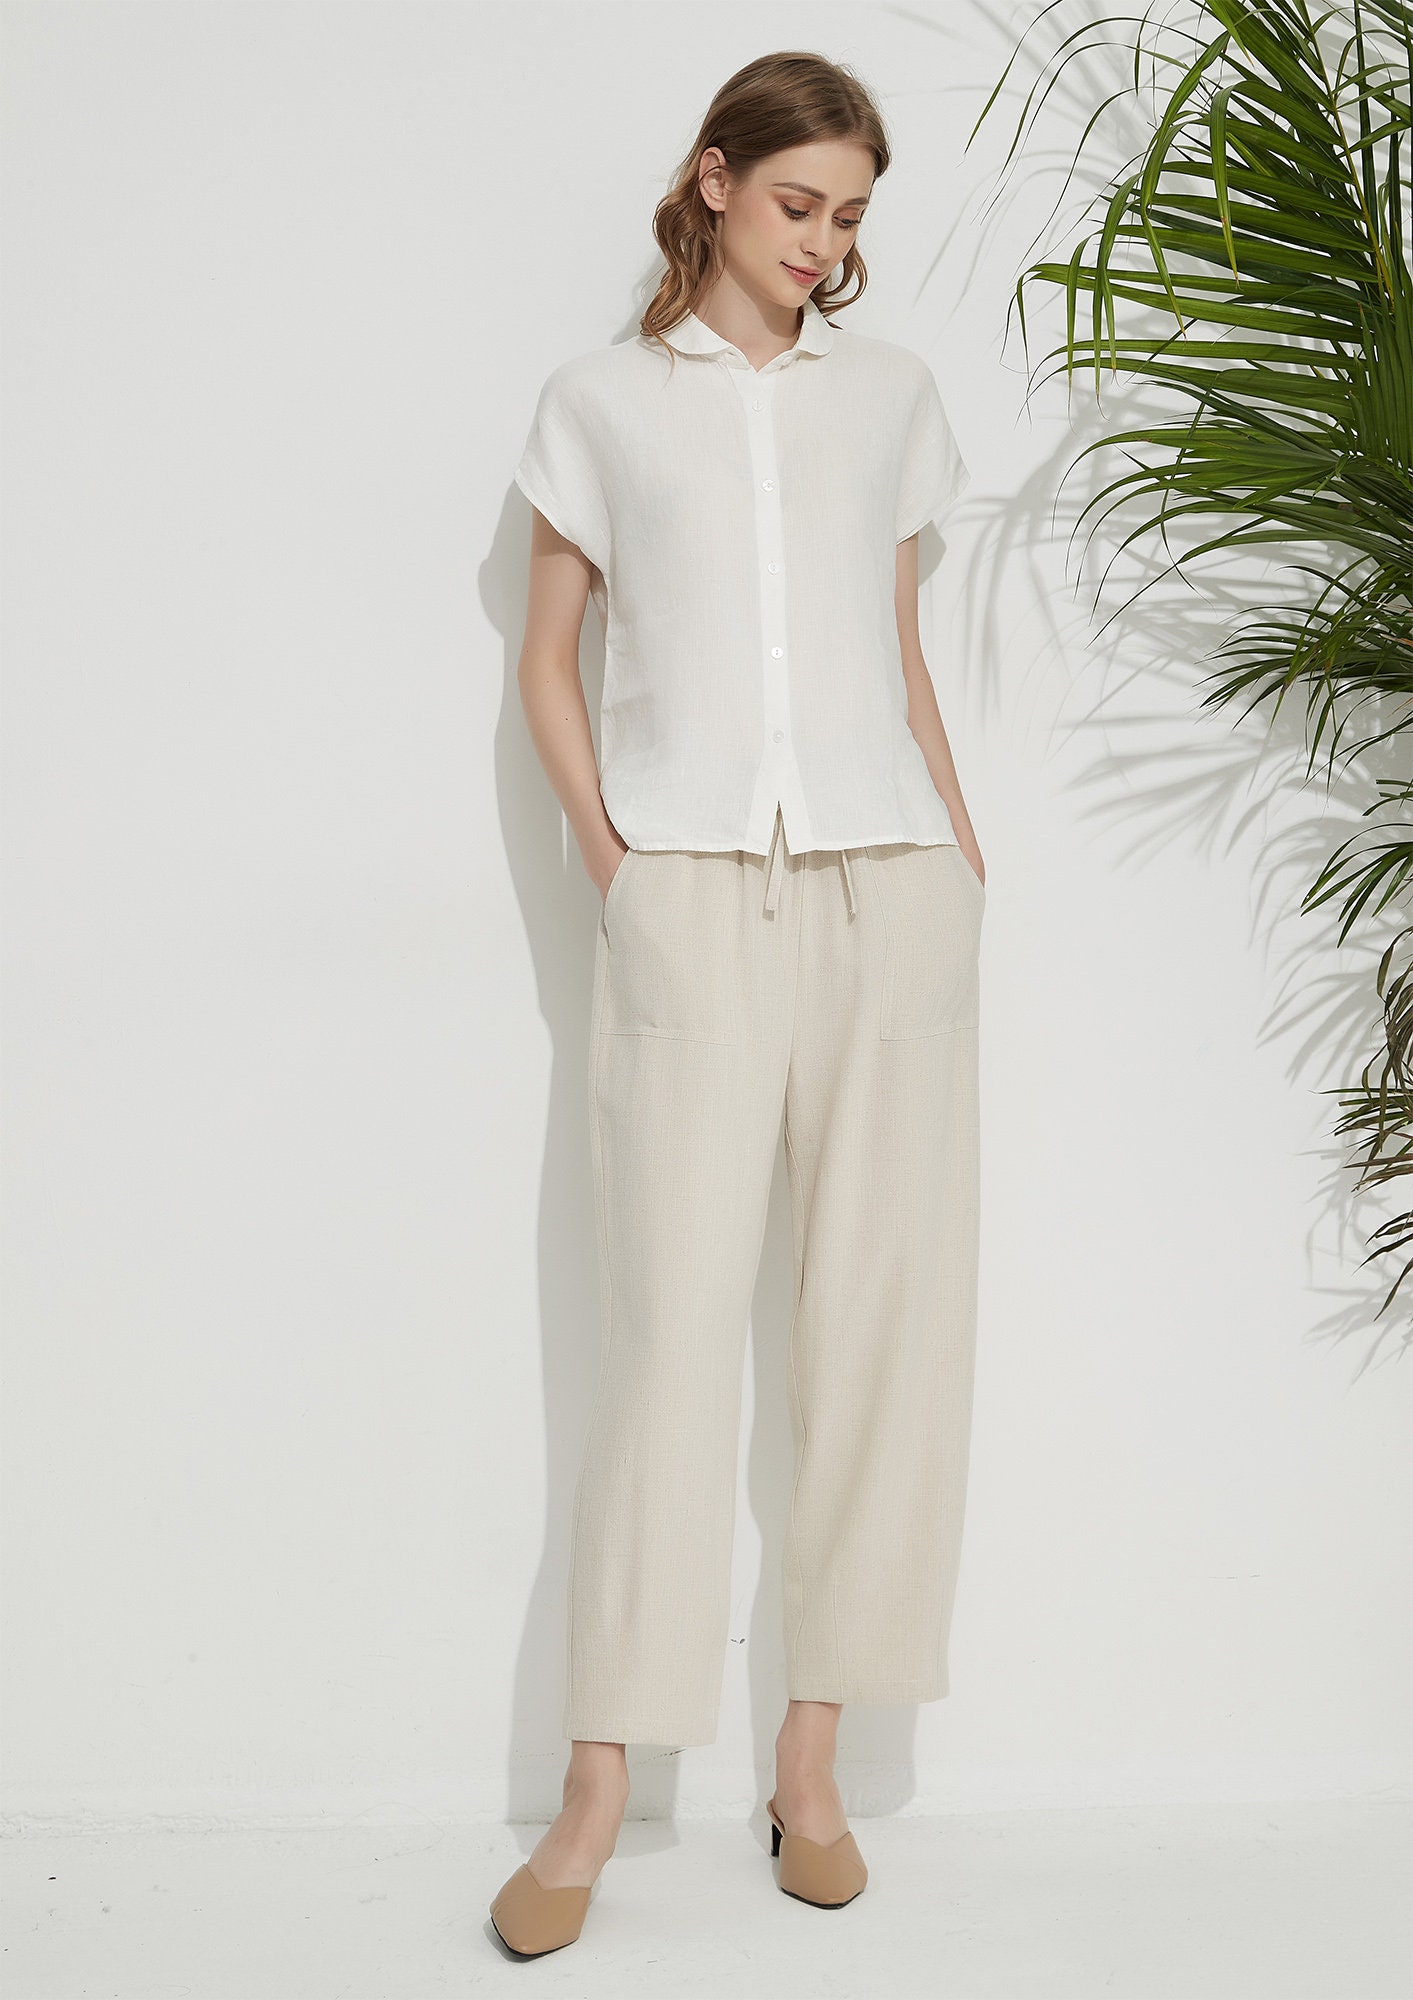 Women's Summer Linen Shirts Basic Linen Shirt Soft Loose - Etsy